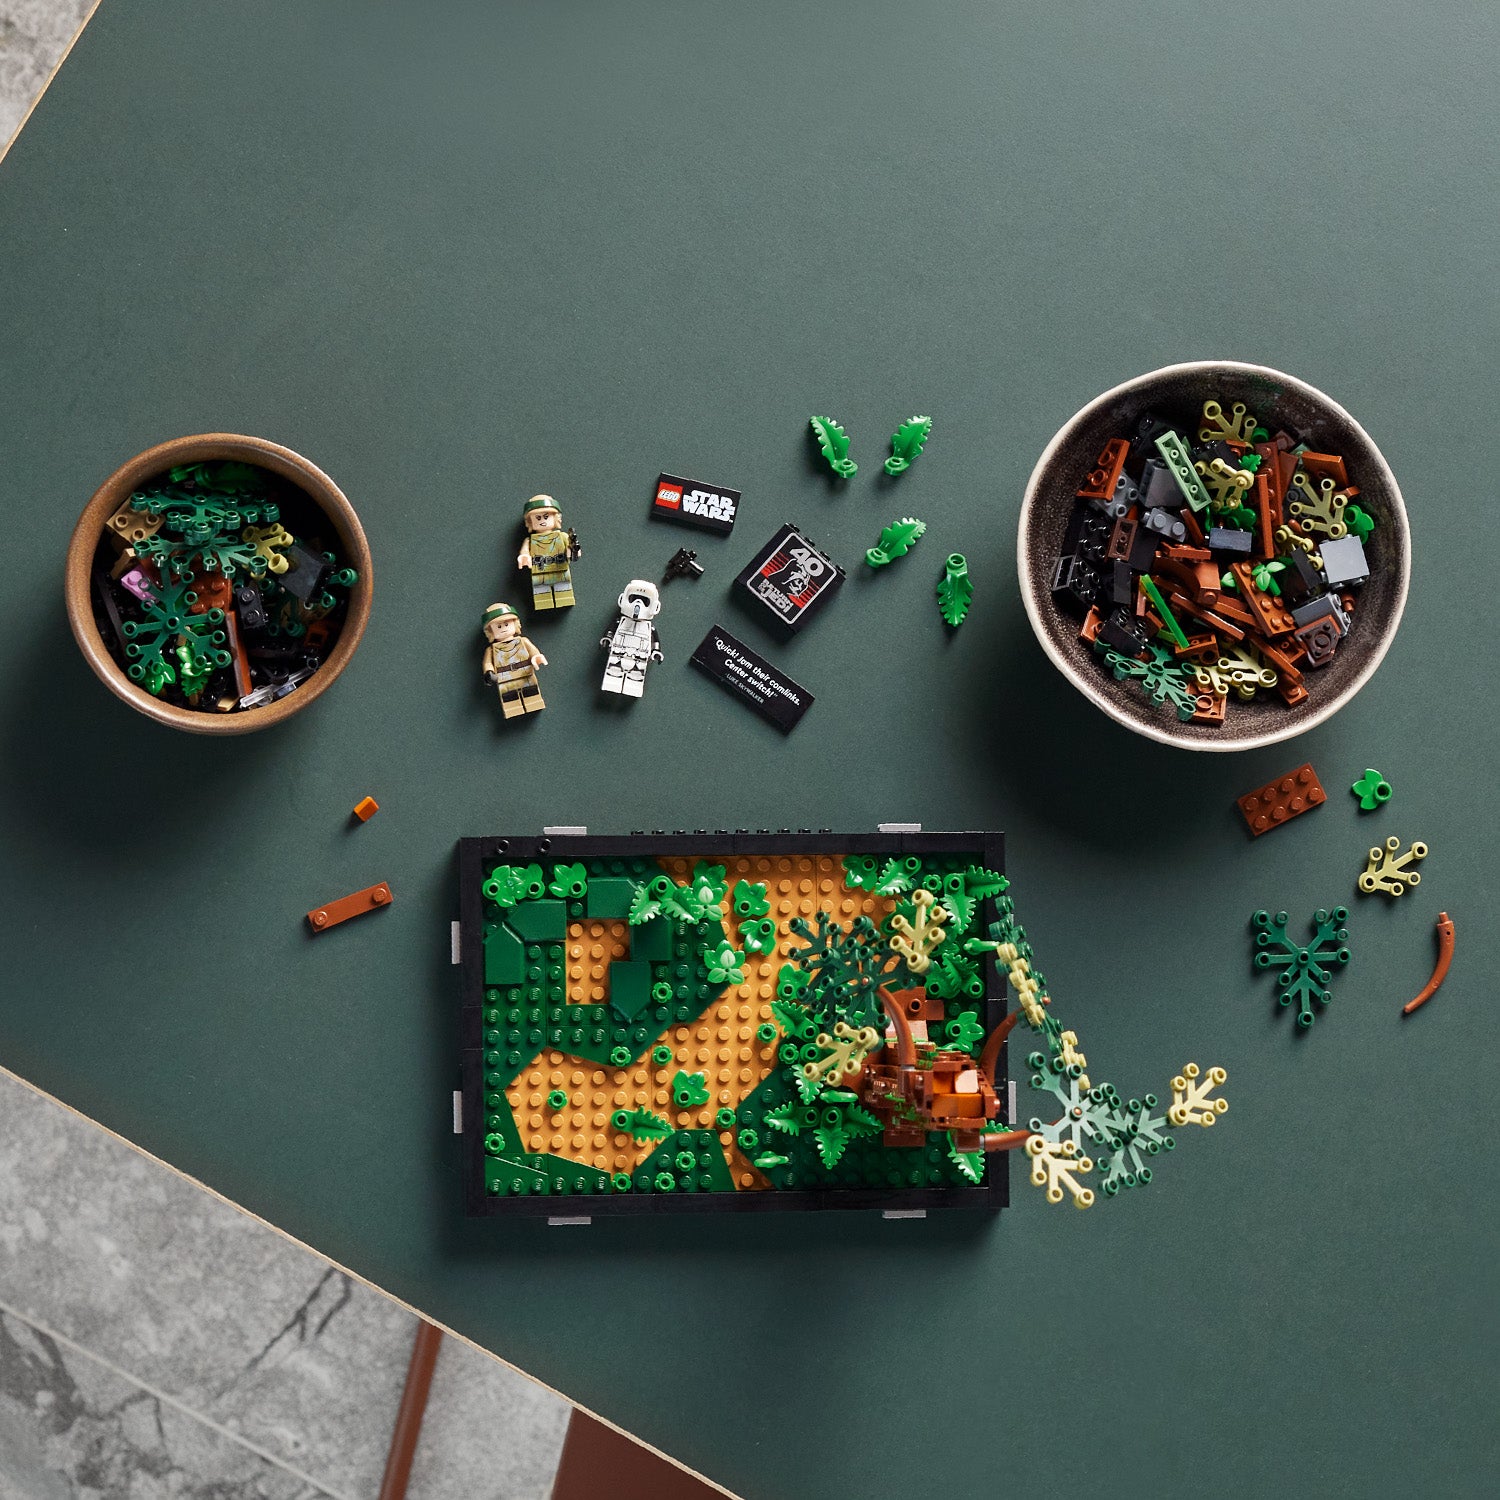 Lego 75353 Star Wars Endor™ Speeder Chase Diorama